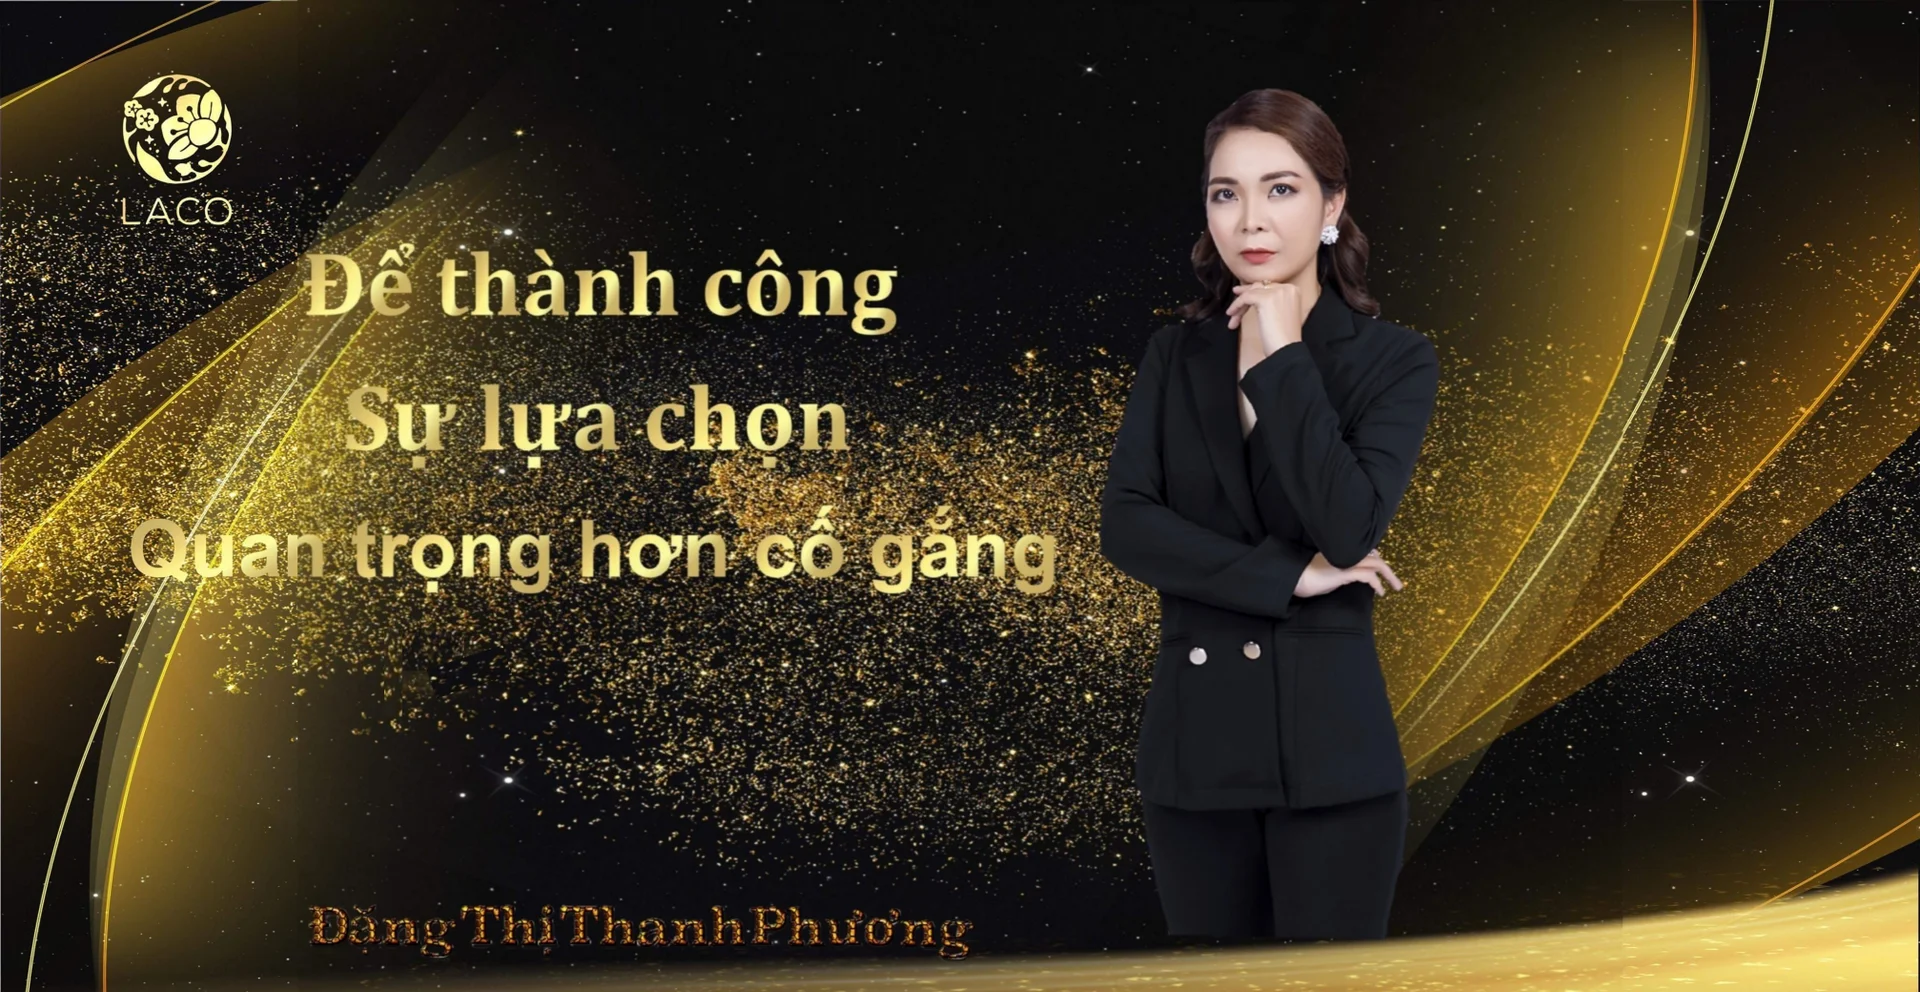 PHƯƠNG ĐẶNG THỊ THANH PHƯƠNG's cover photo